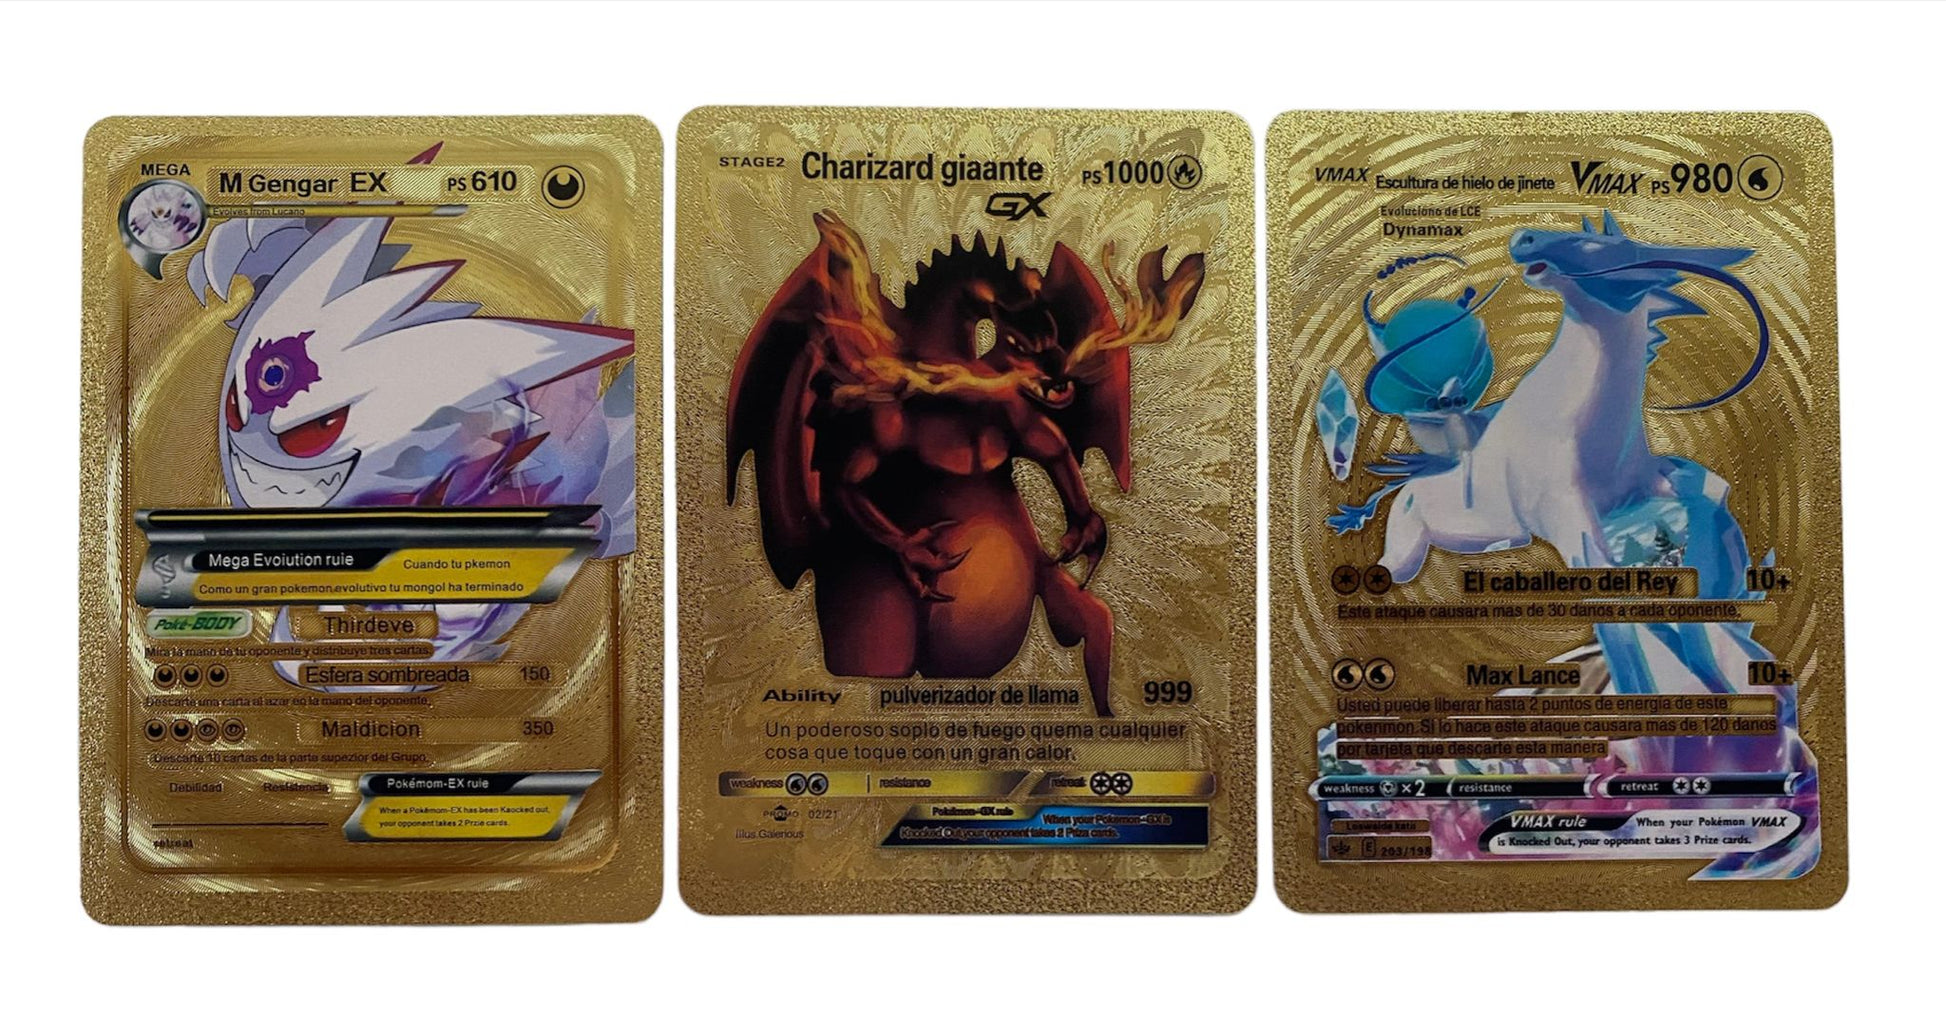 Cartas Douradas Pokémon - 20 Peças - GigaDeal